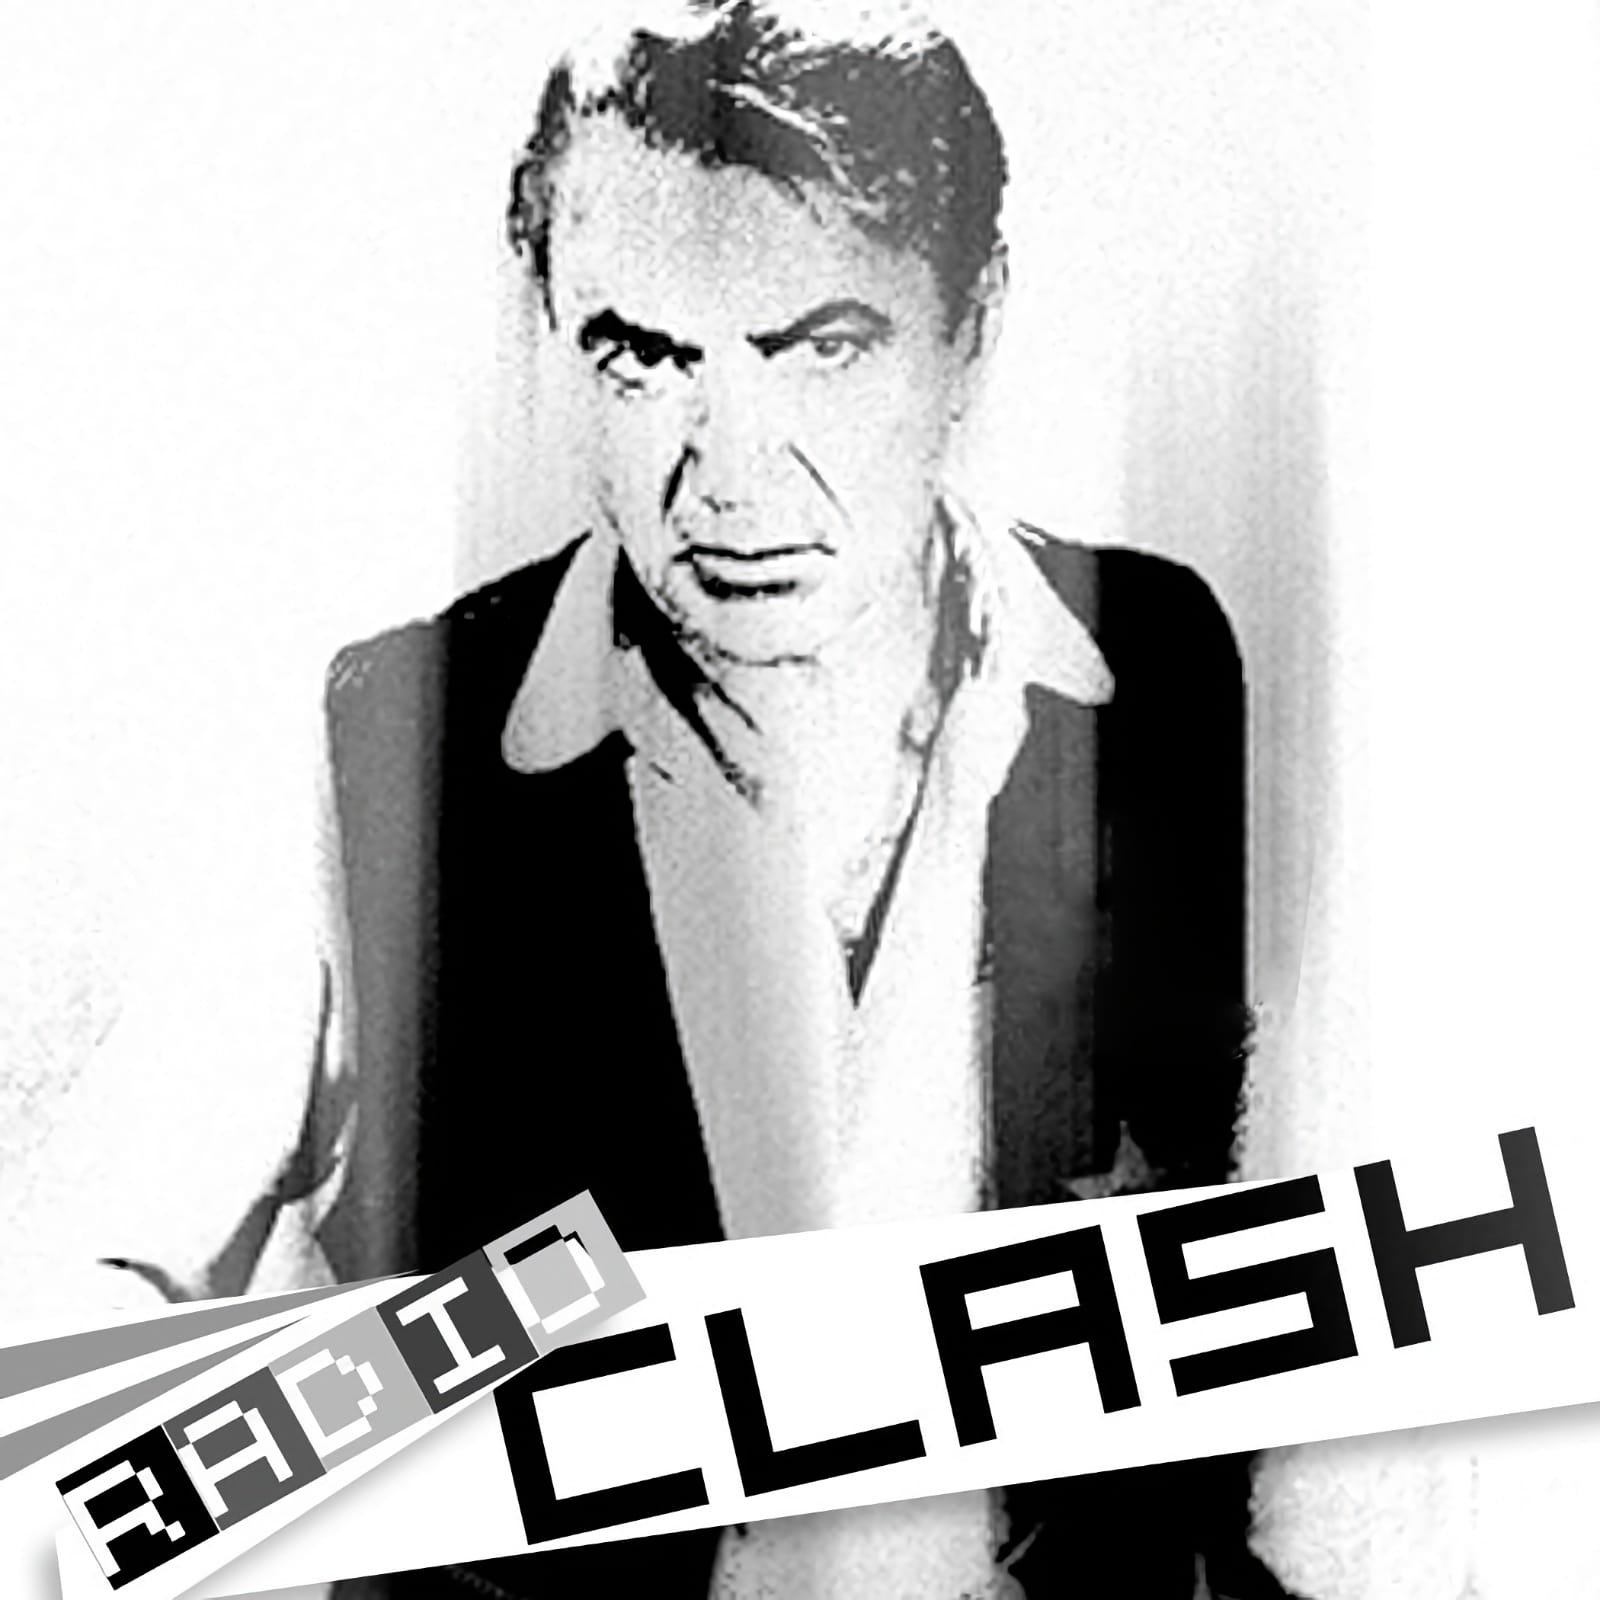 Radio Clash premiere!